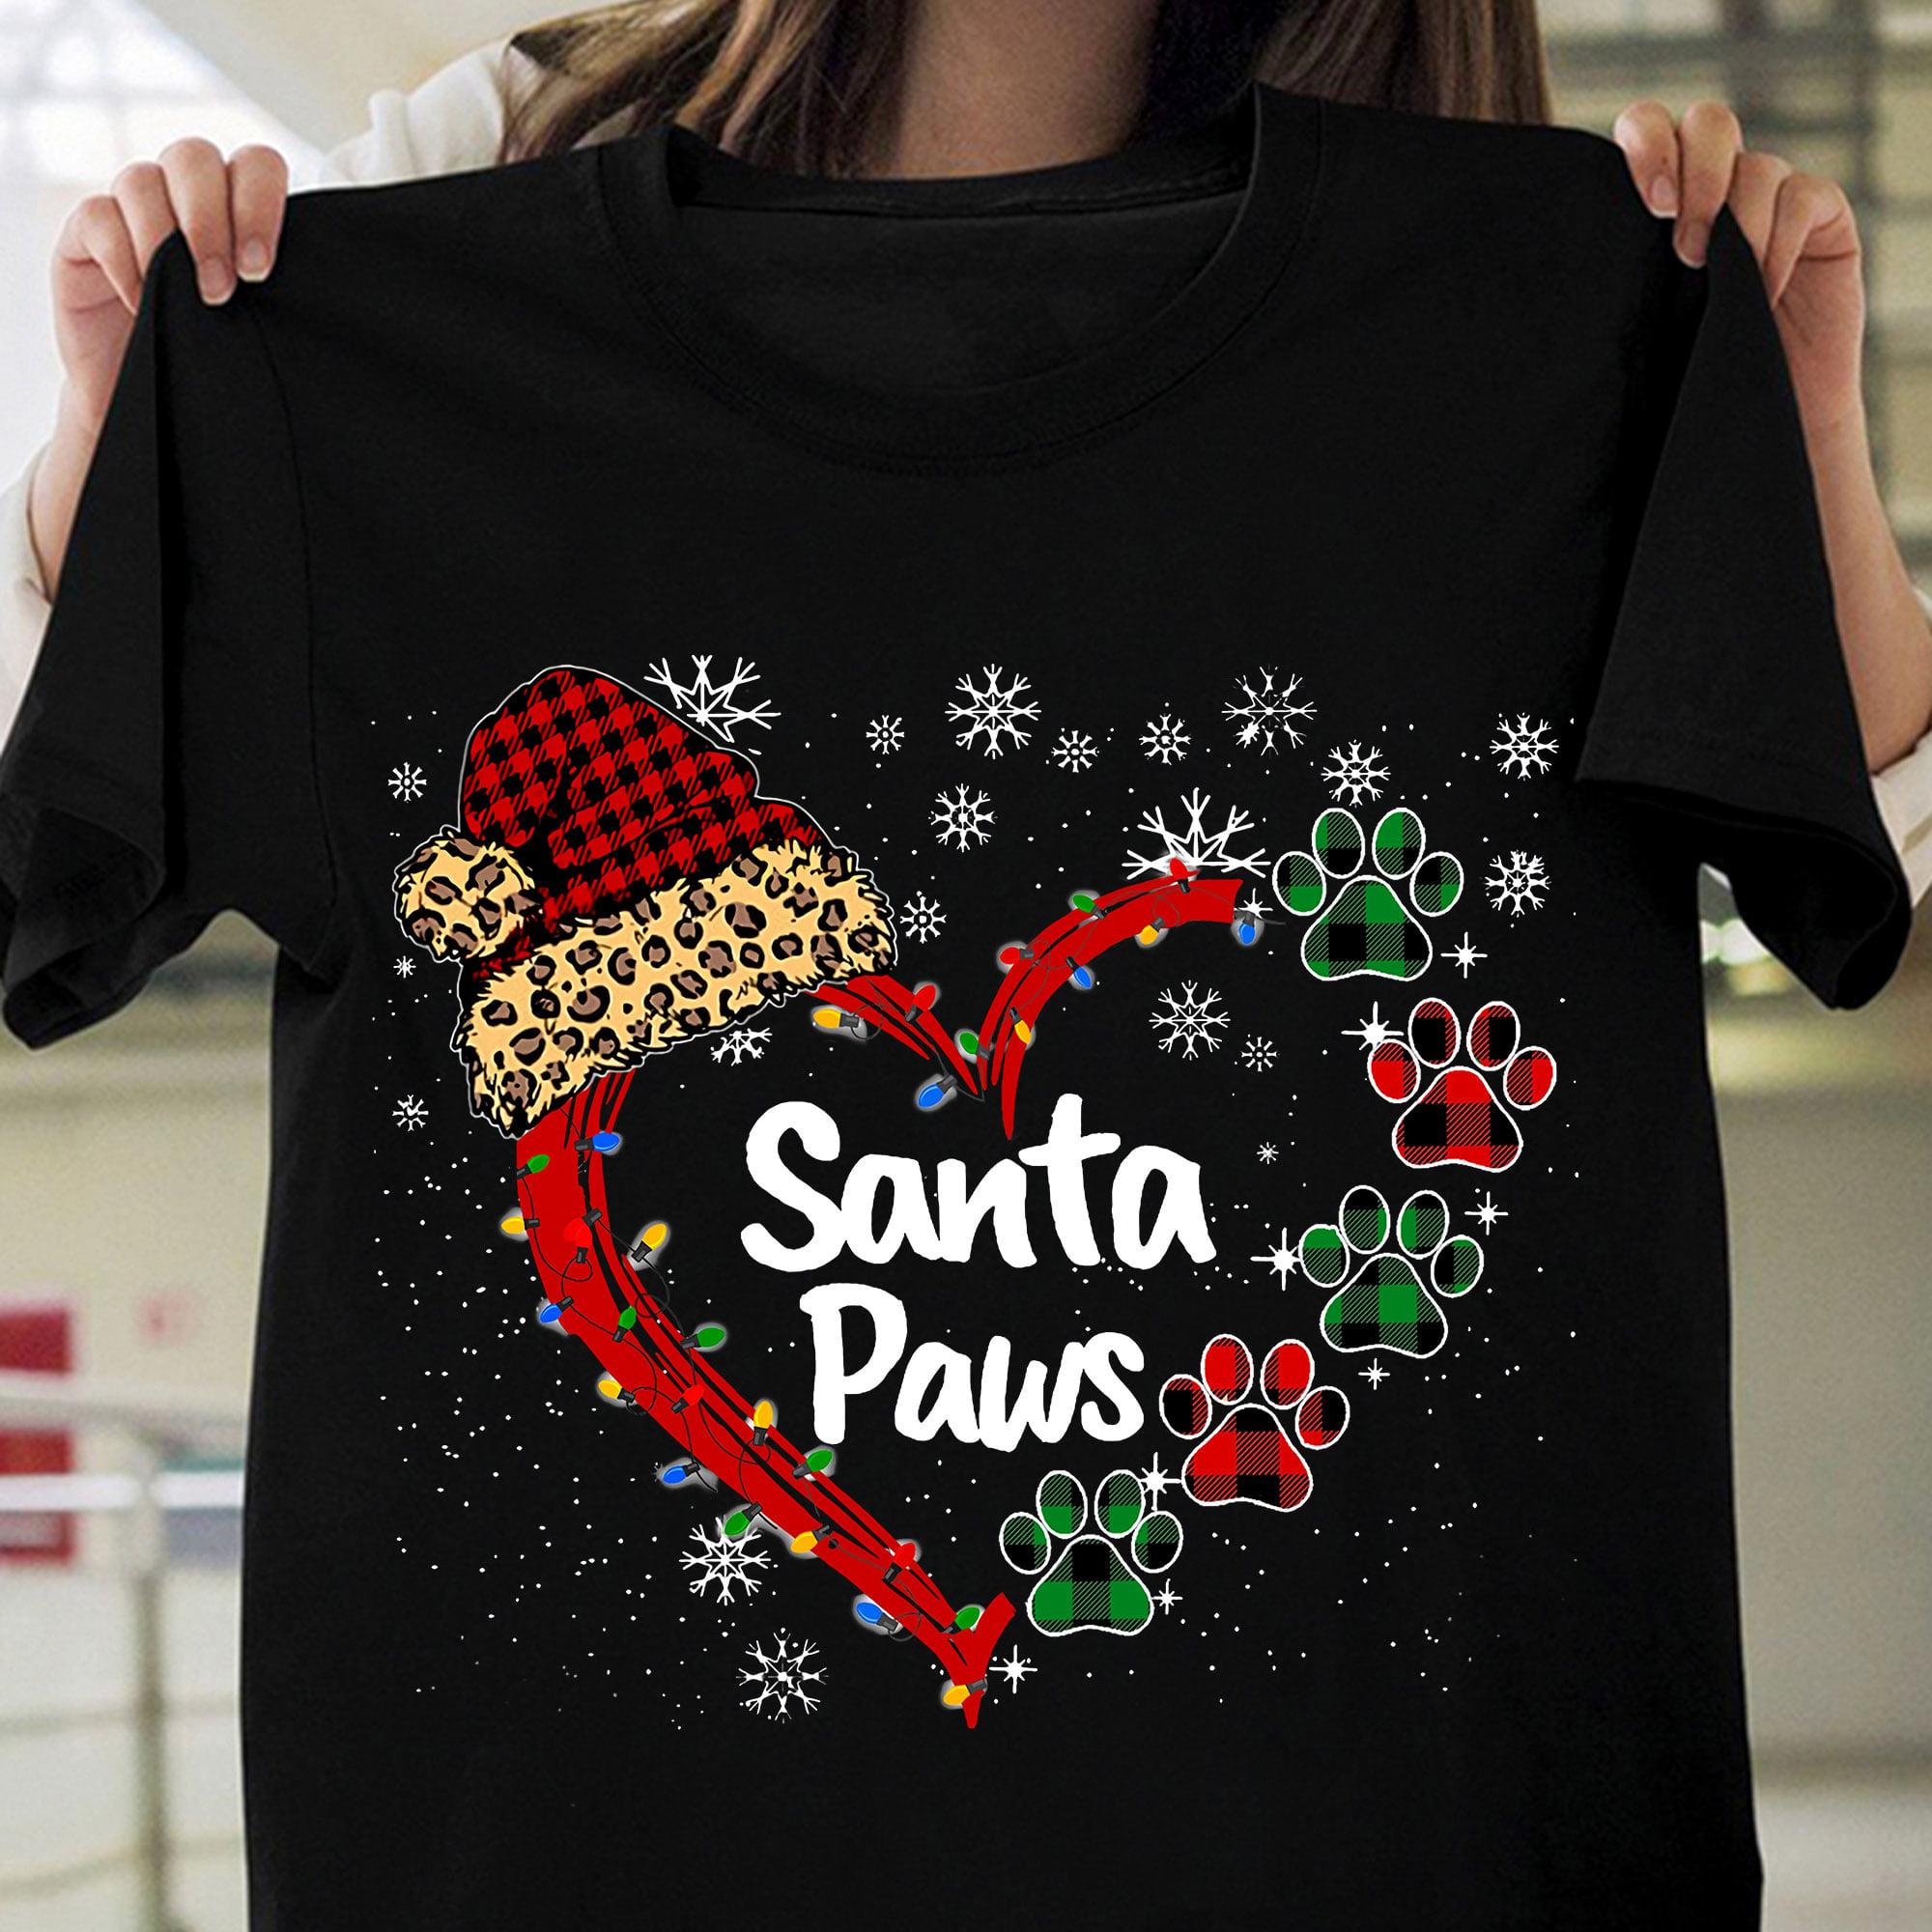 Santa Paws - Santa and dog paws, Christmas day gift, Christmas day ugly sweater